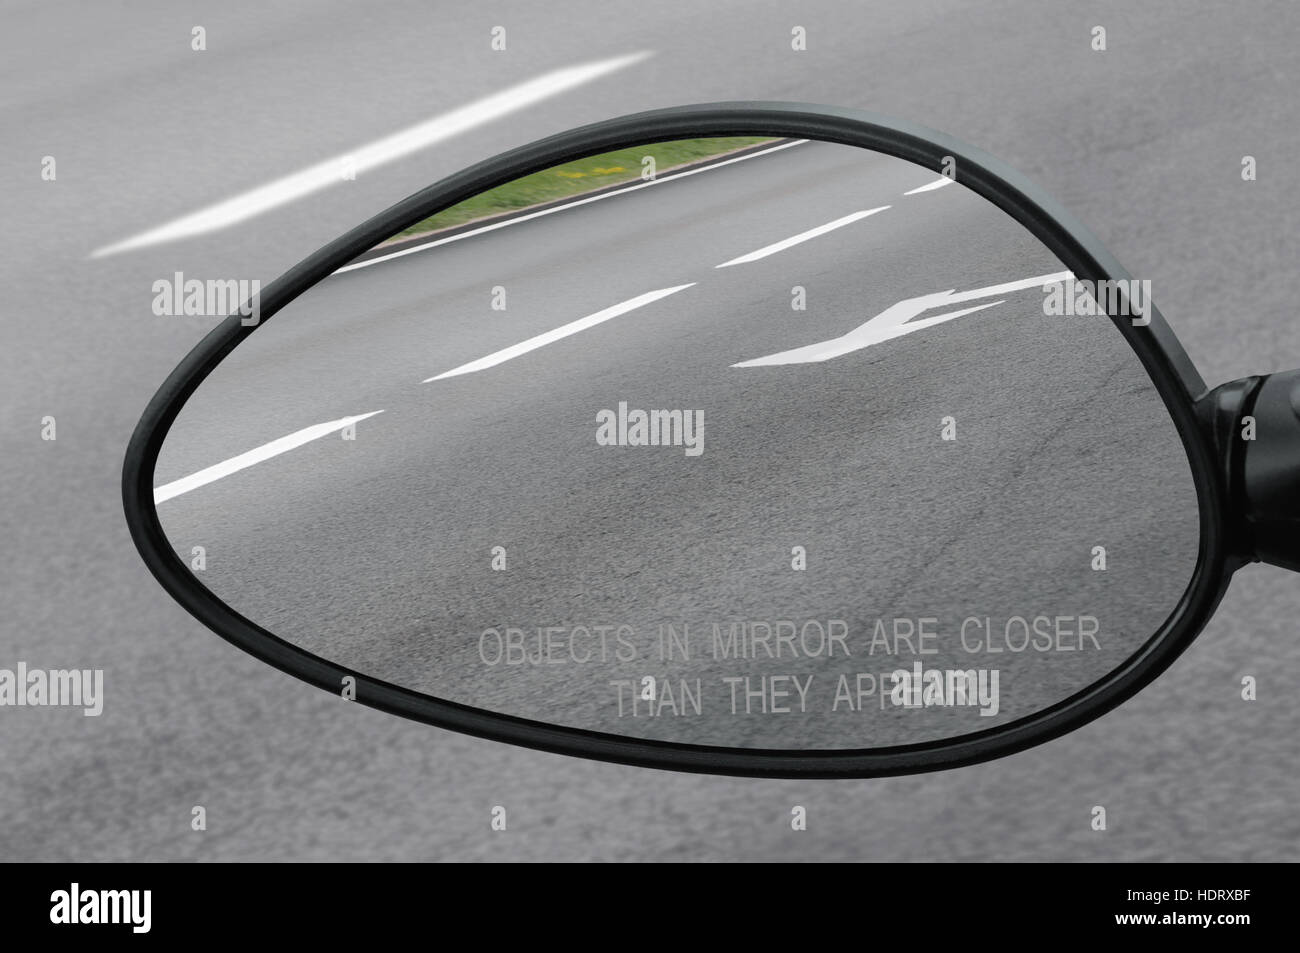 Rückspiegel mit Text der Warnung, die Objekte im Spiegel näher